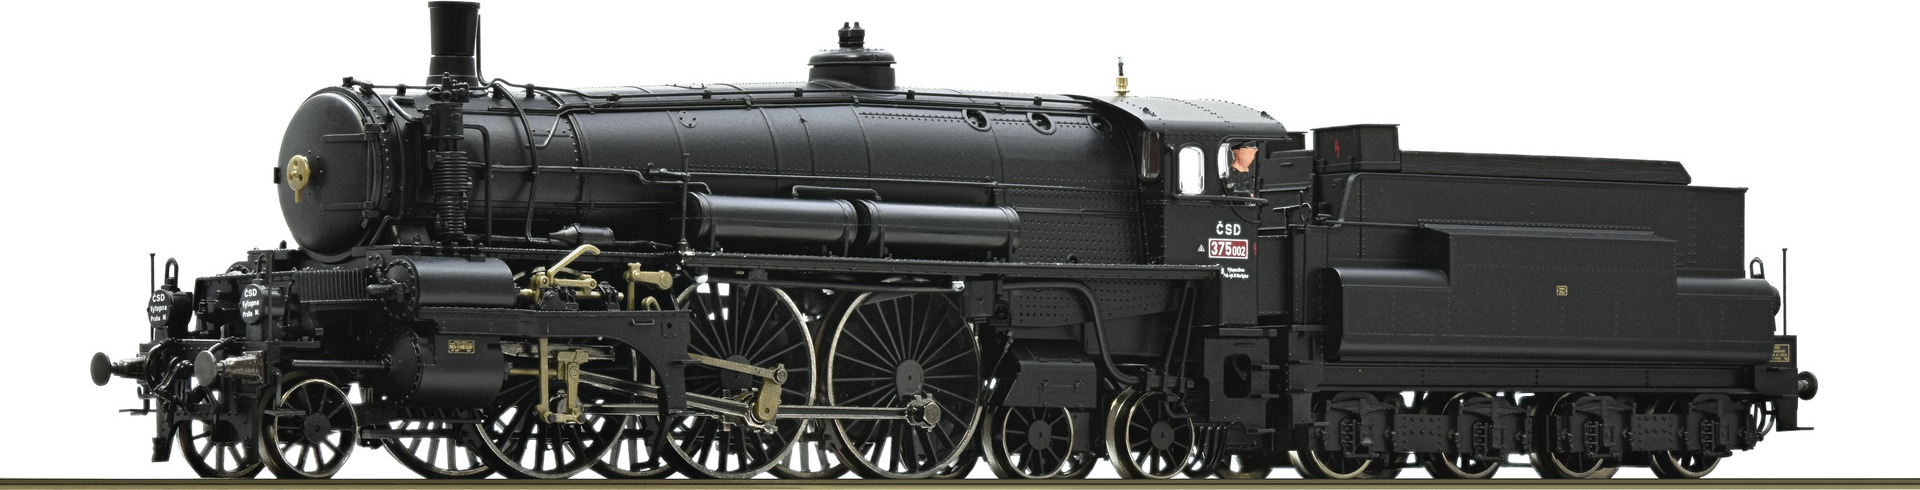 Parní lokomotiva 375 002, CSD